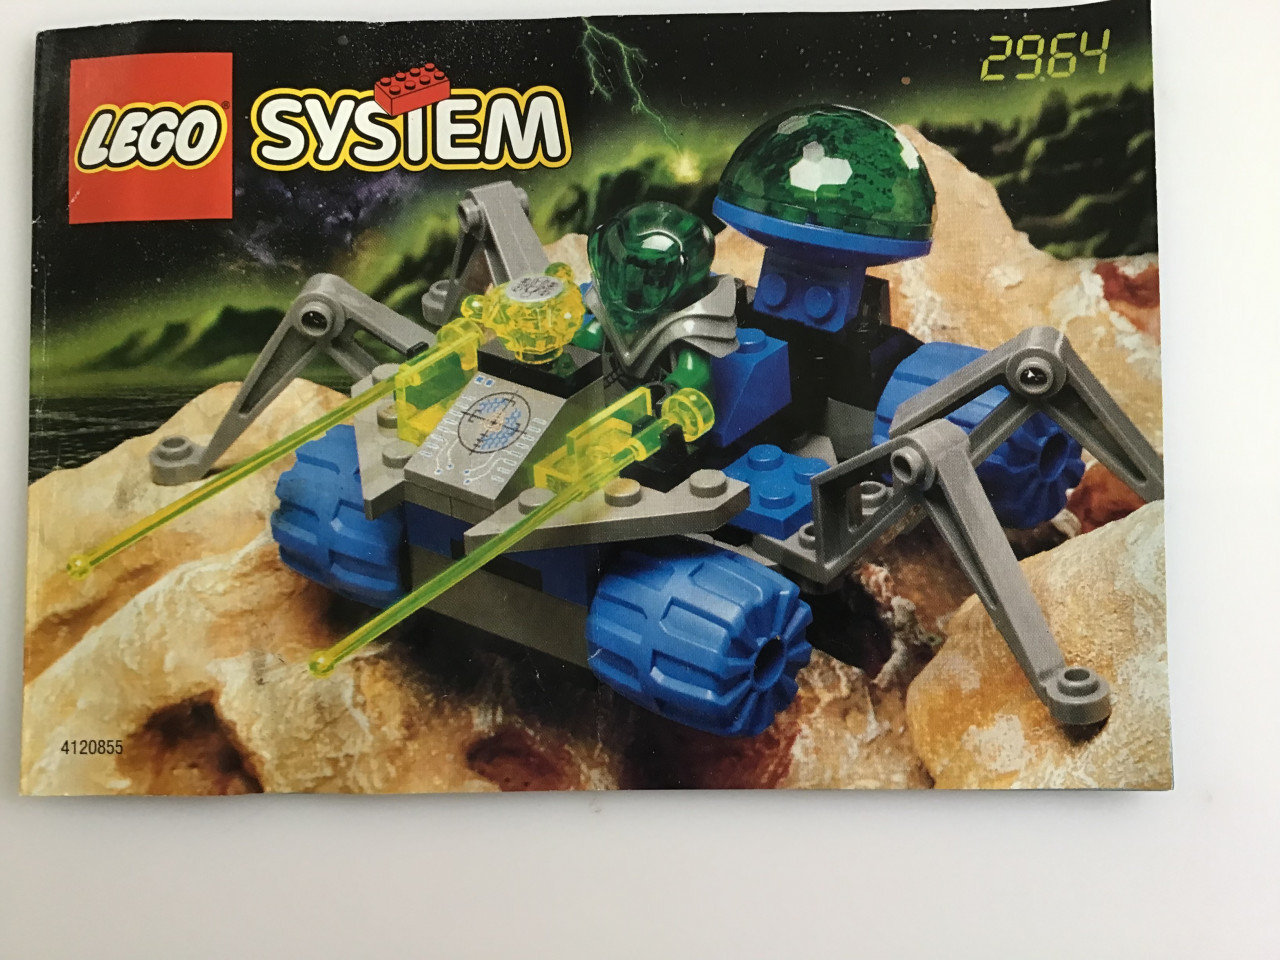 Lego 2964 System